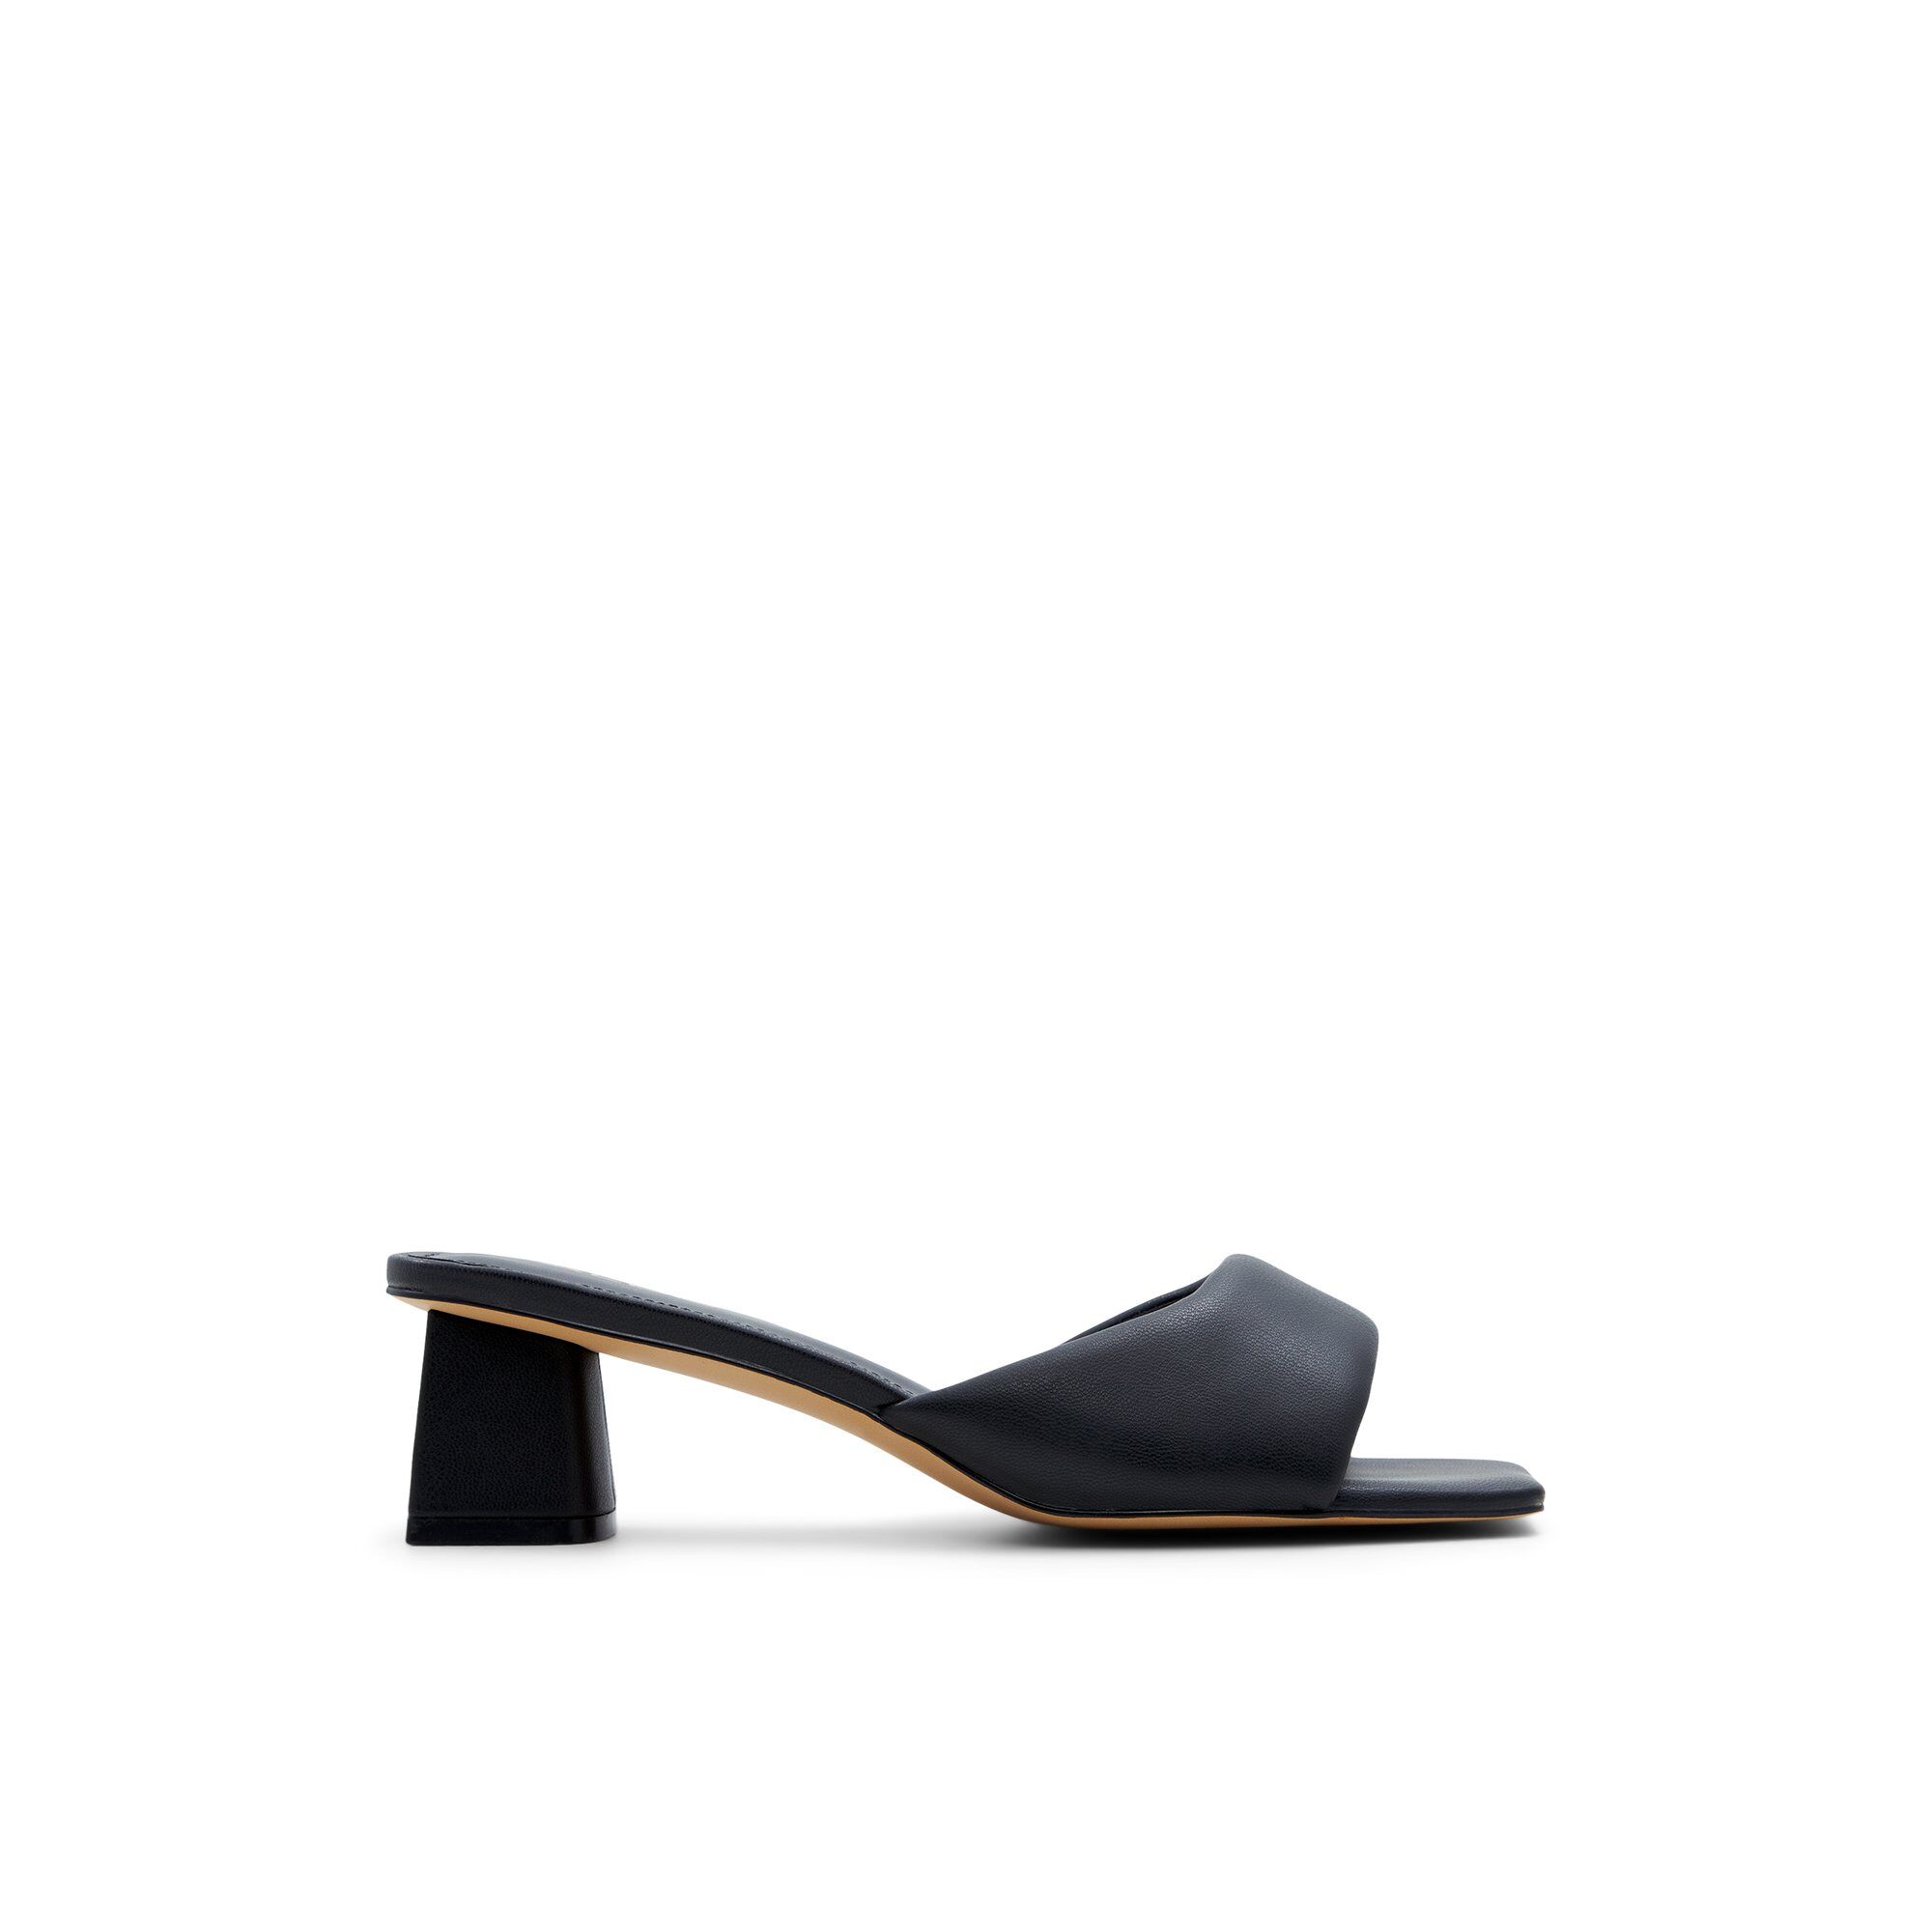 ALDO Aneka - Women's Kitten Heel - Black, Size 11